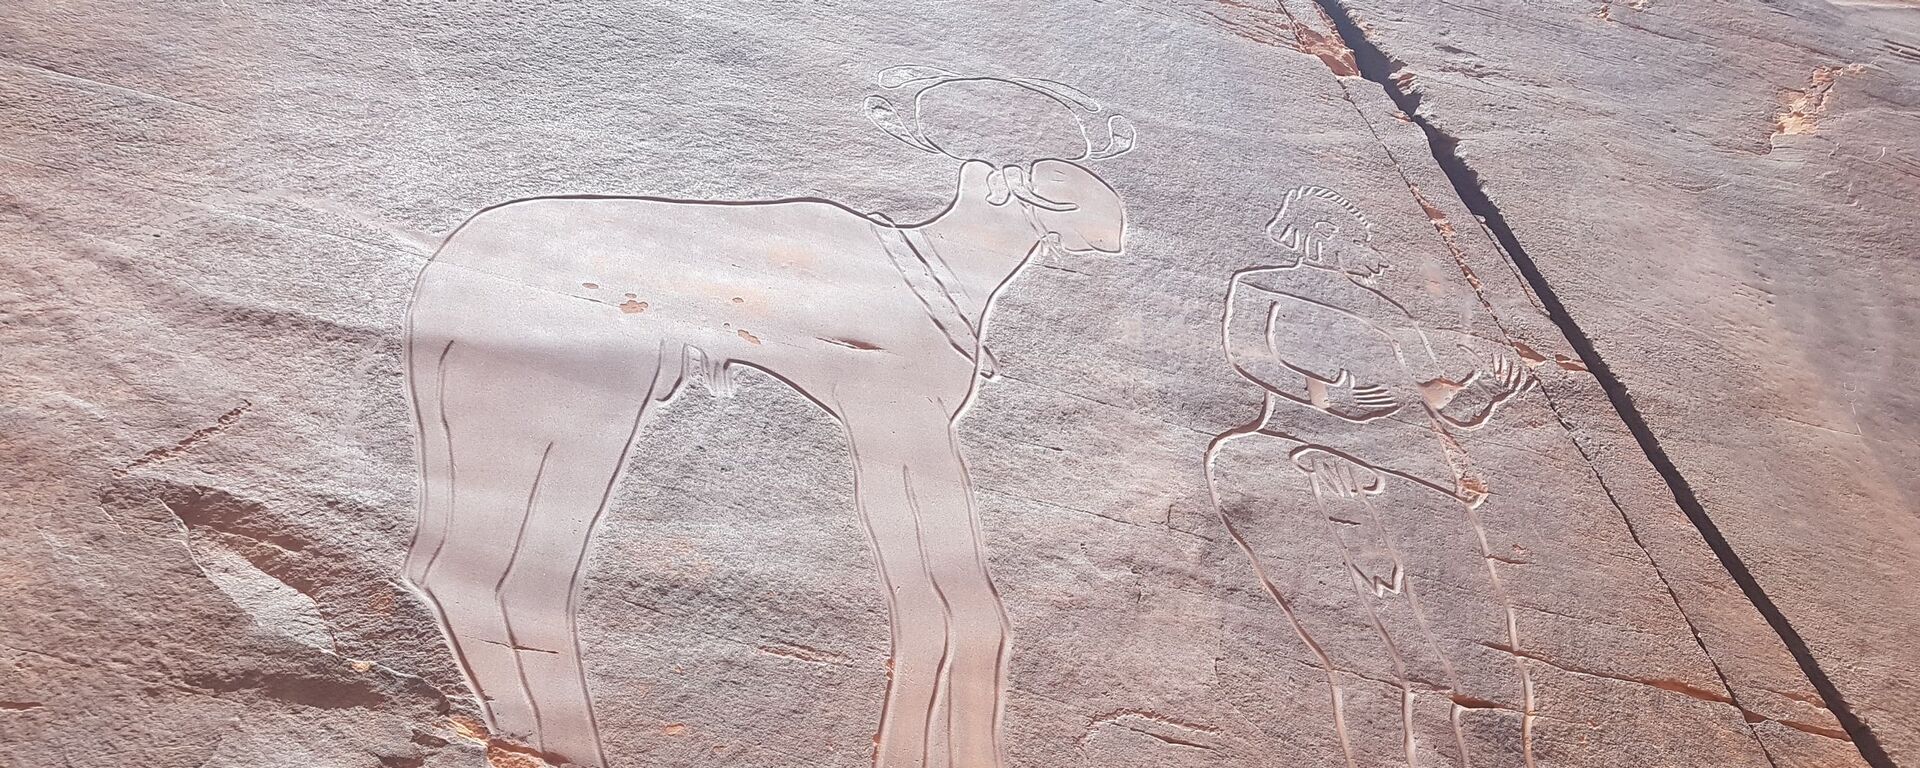 Gravure rupestre de la falaise de Fedjet el Kheil, période du Bubale (8.000-6.000 ans avant l'ère chrétienne), représentant un homme et un bélier à tête sphéroïde - Sputnik Afrique, 1920, 08.08.2020